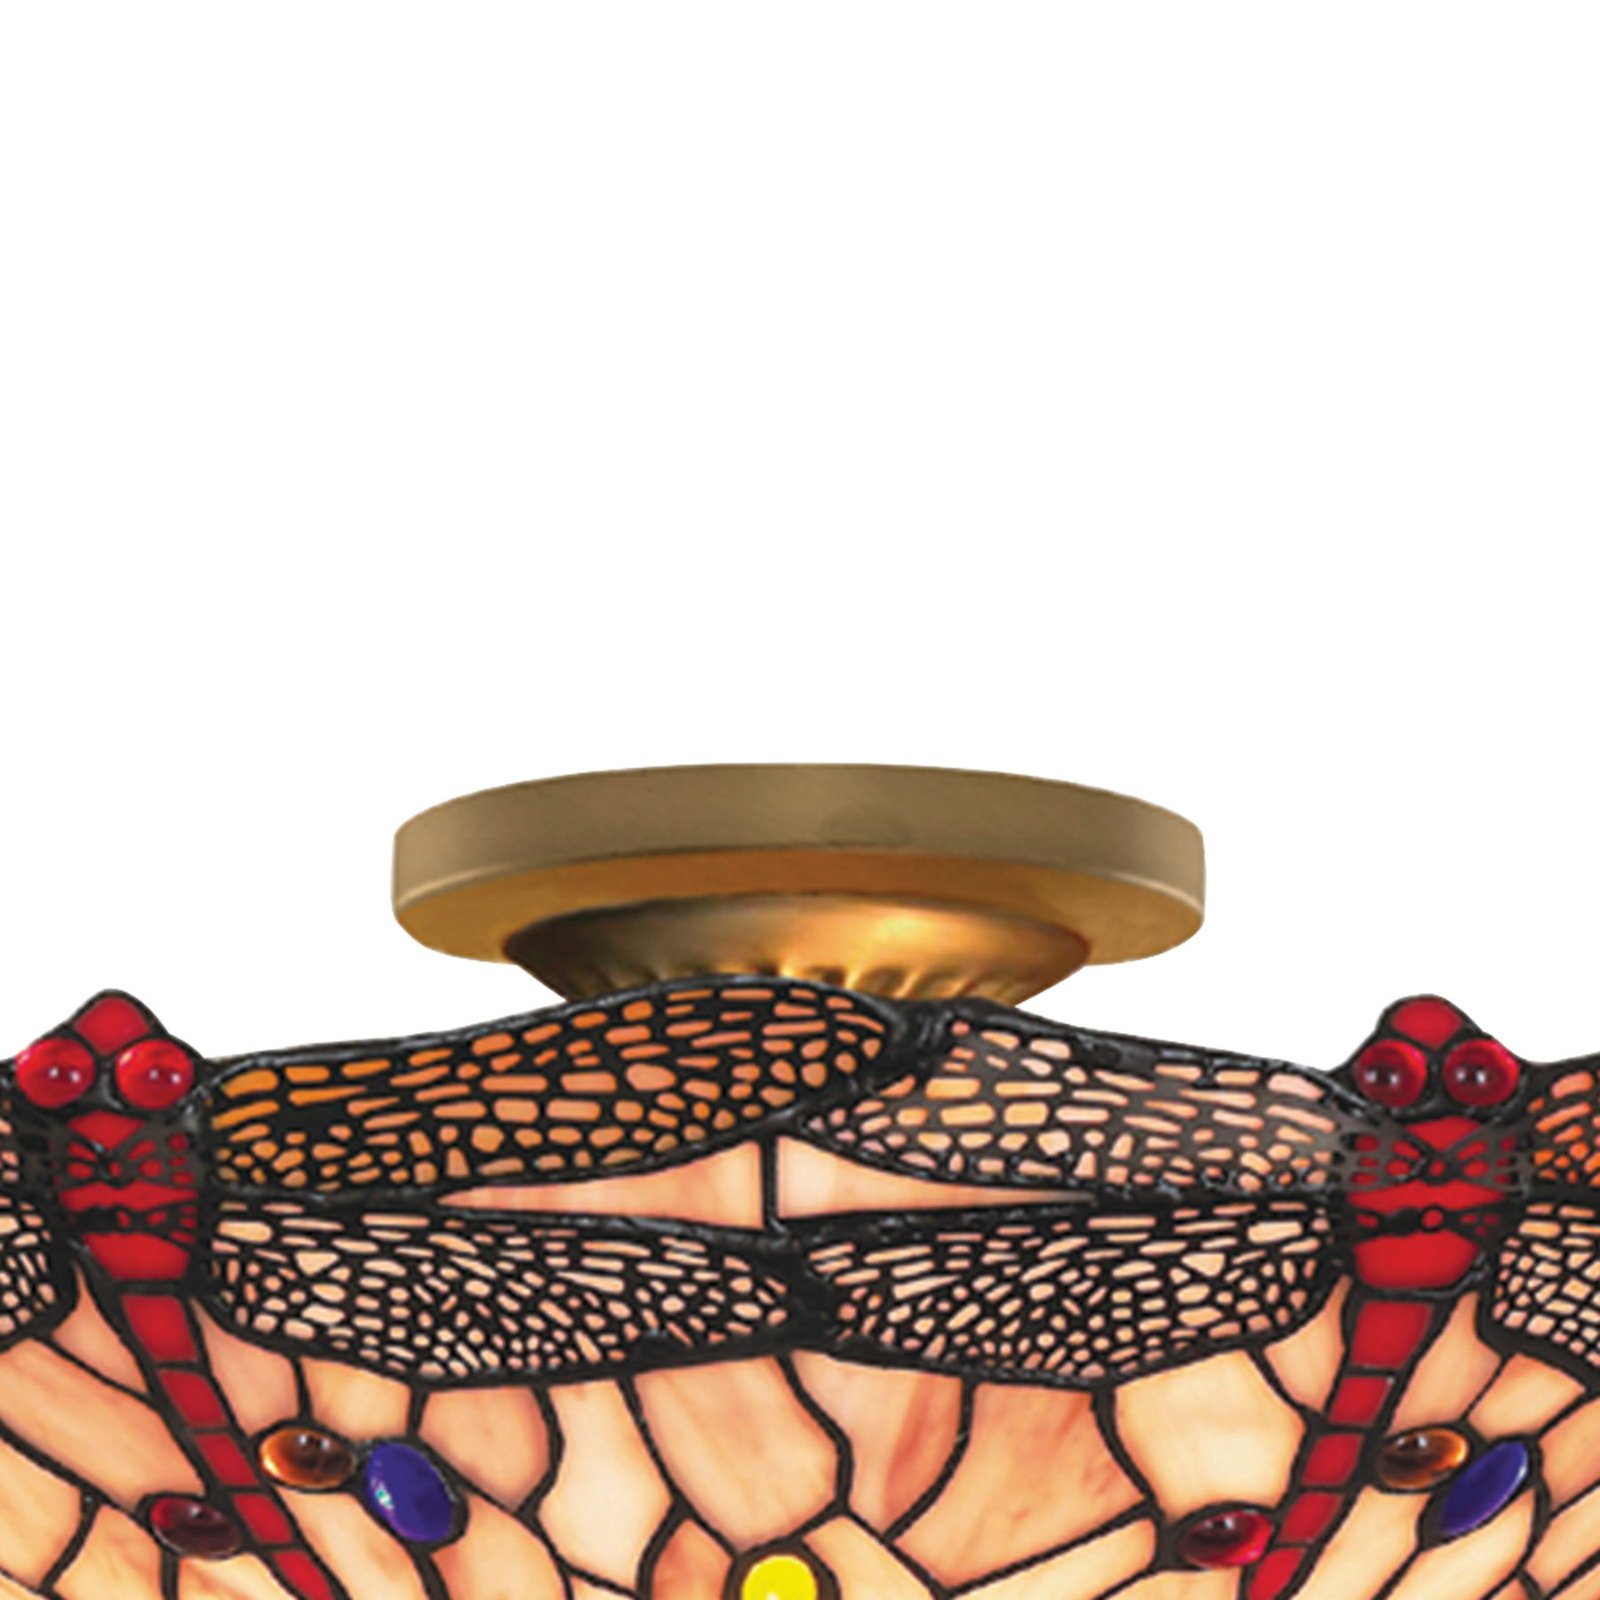 Lampa sufitowa Dragonfly w stylu Tiffany